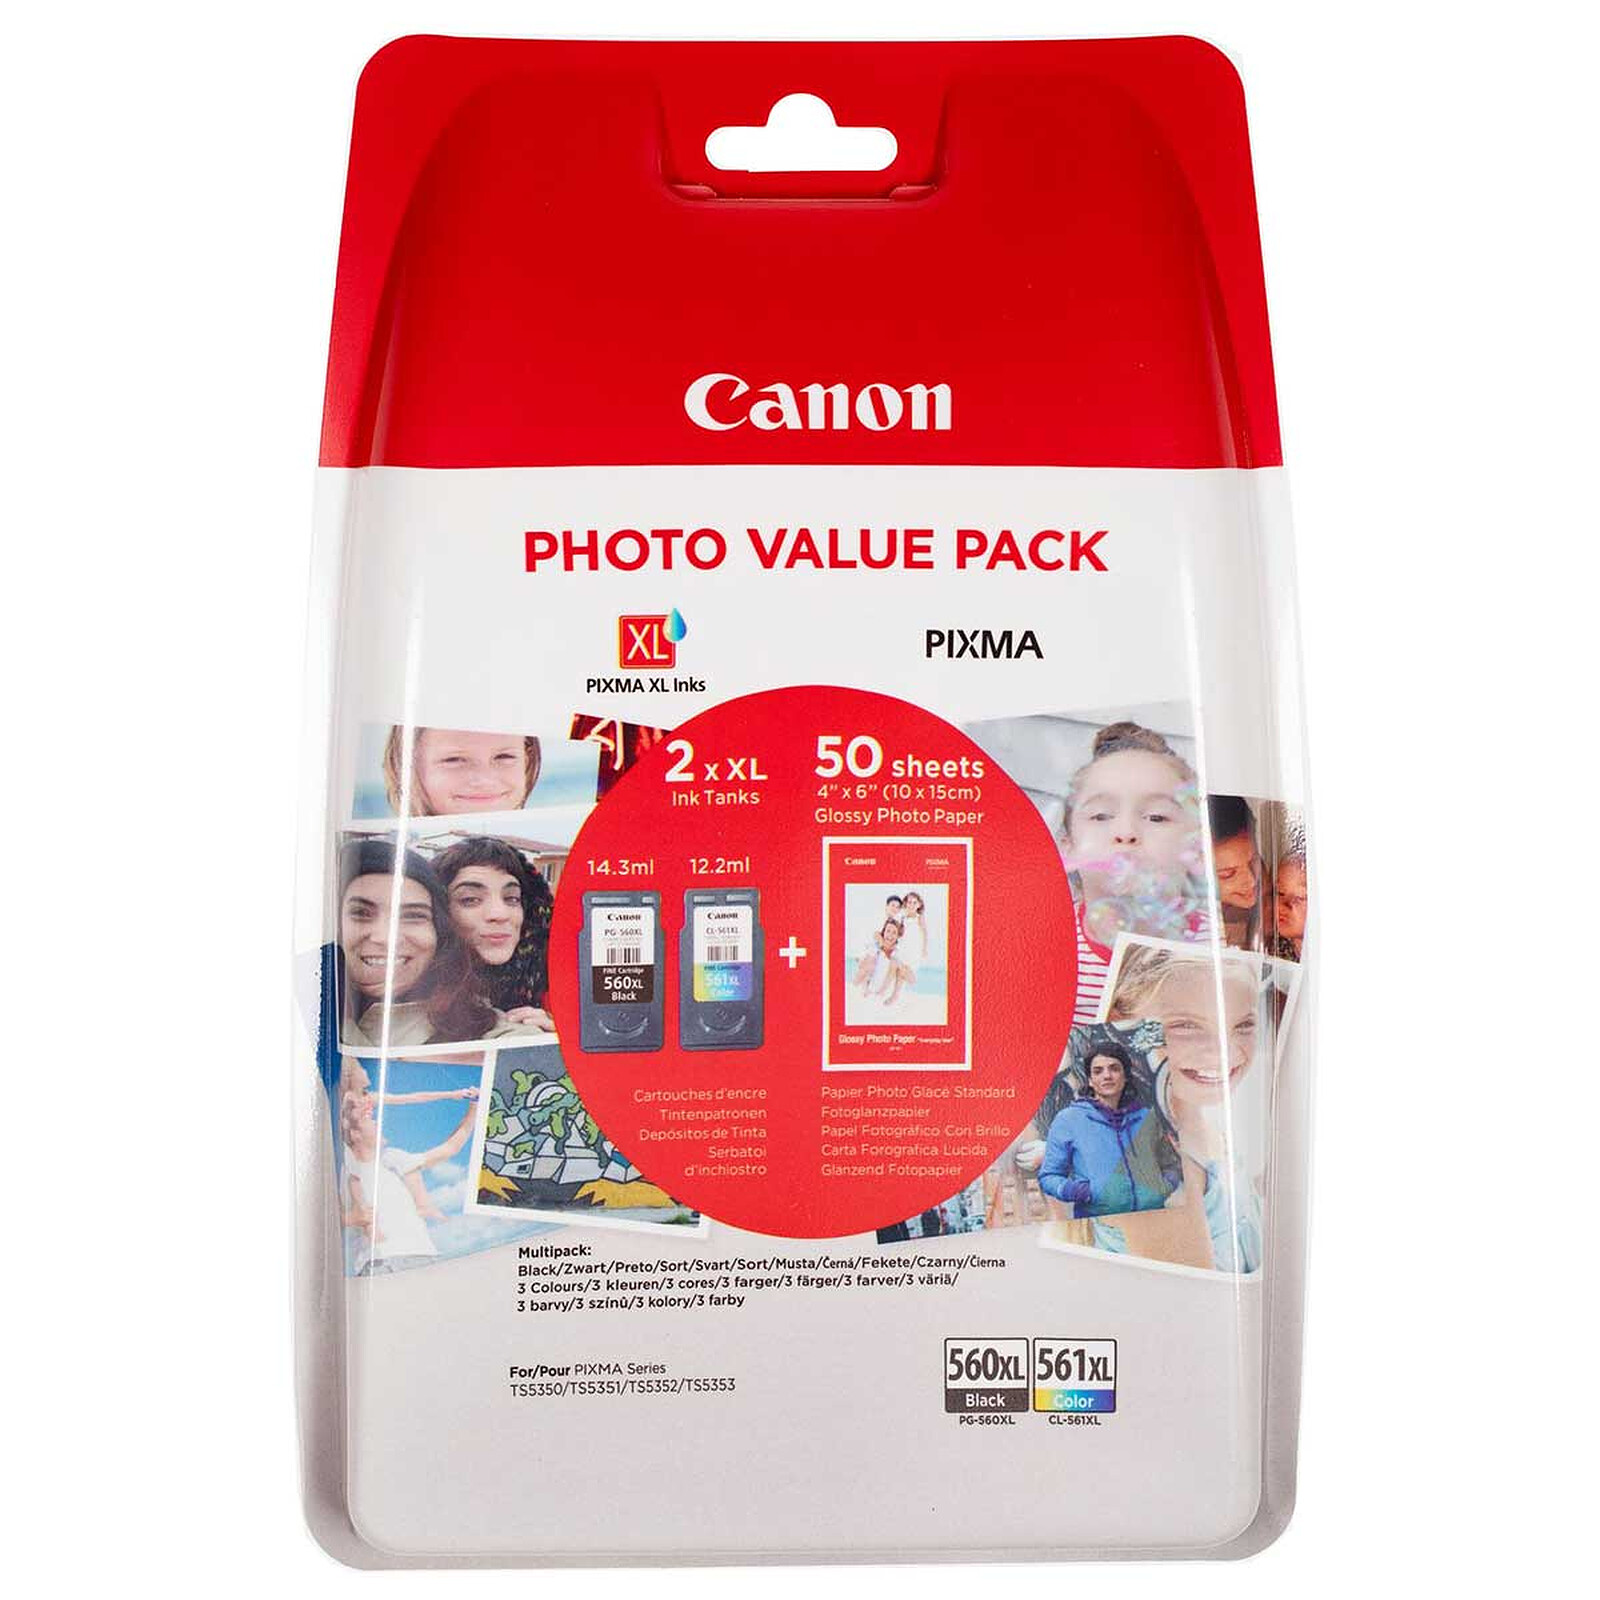 Pack PG-540 L / CL-541 XL Cartouches d'encre Canon + Papier Photo